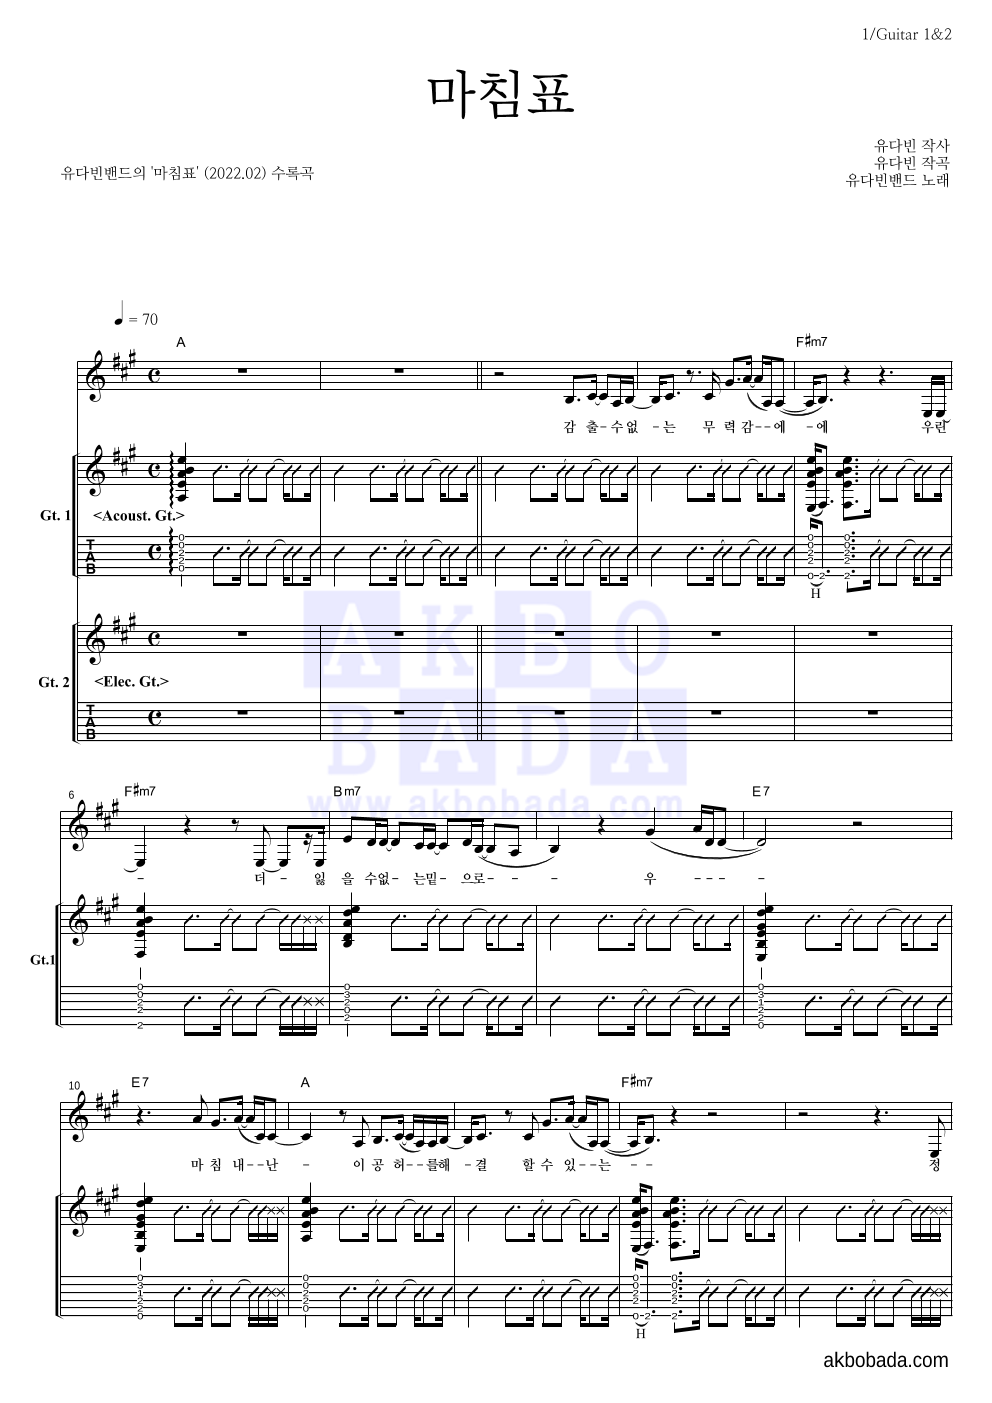 유다빈밴드 - 마침표 기타1,2 악보 